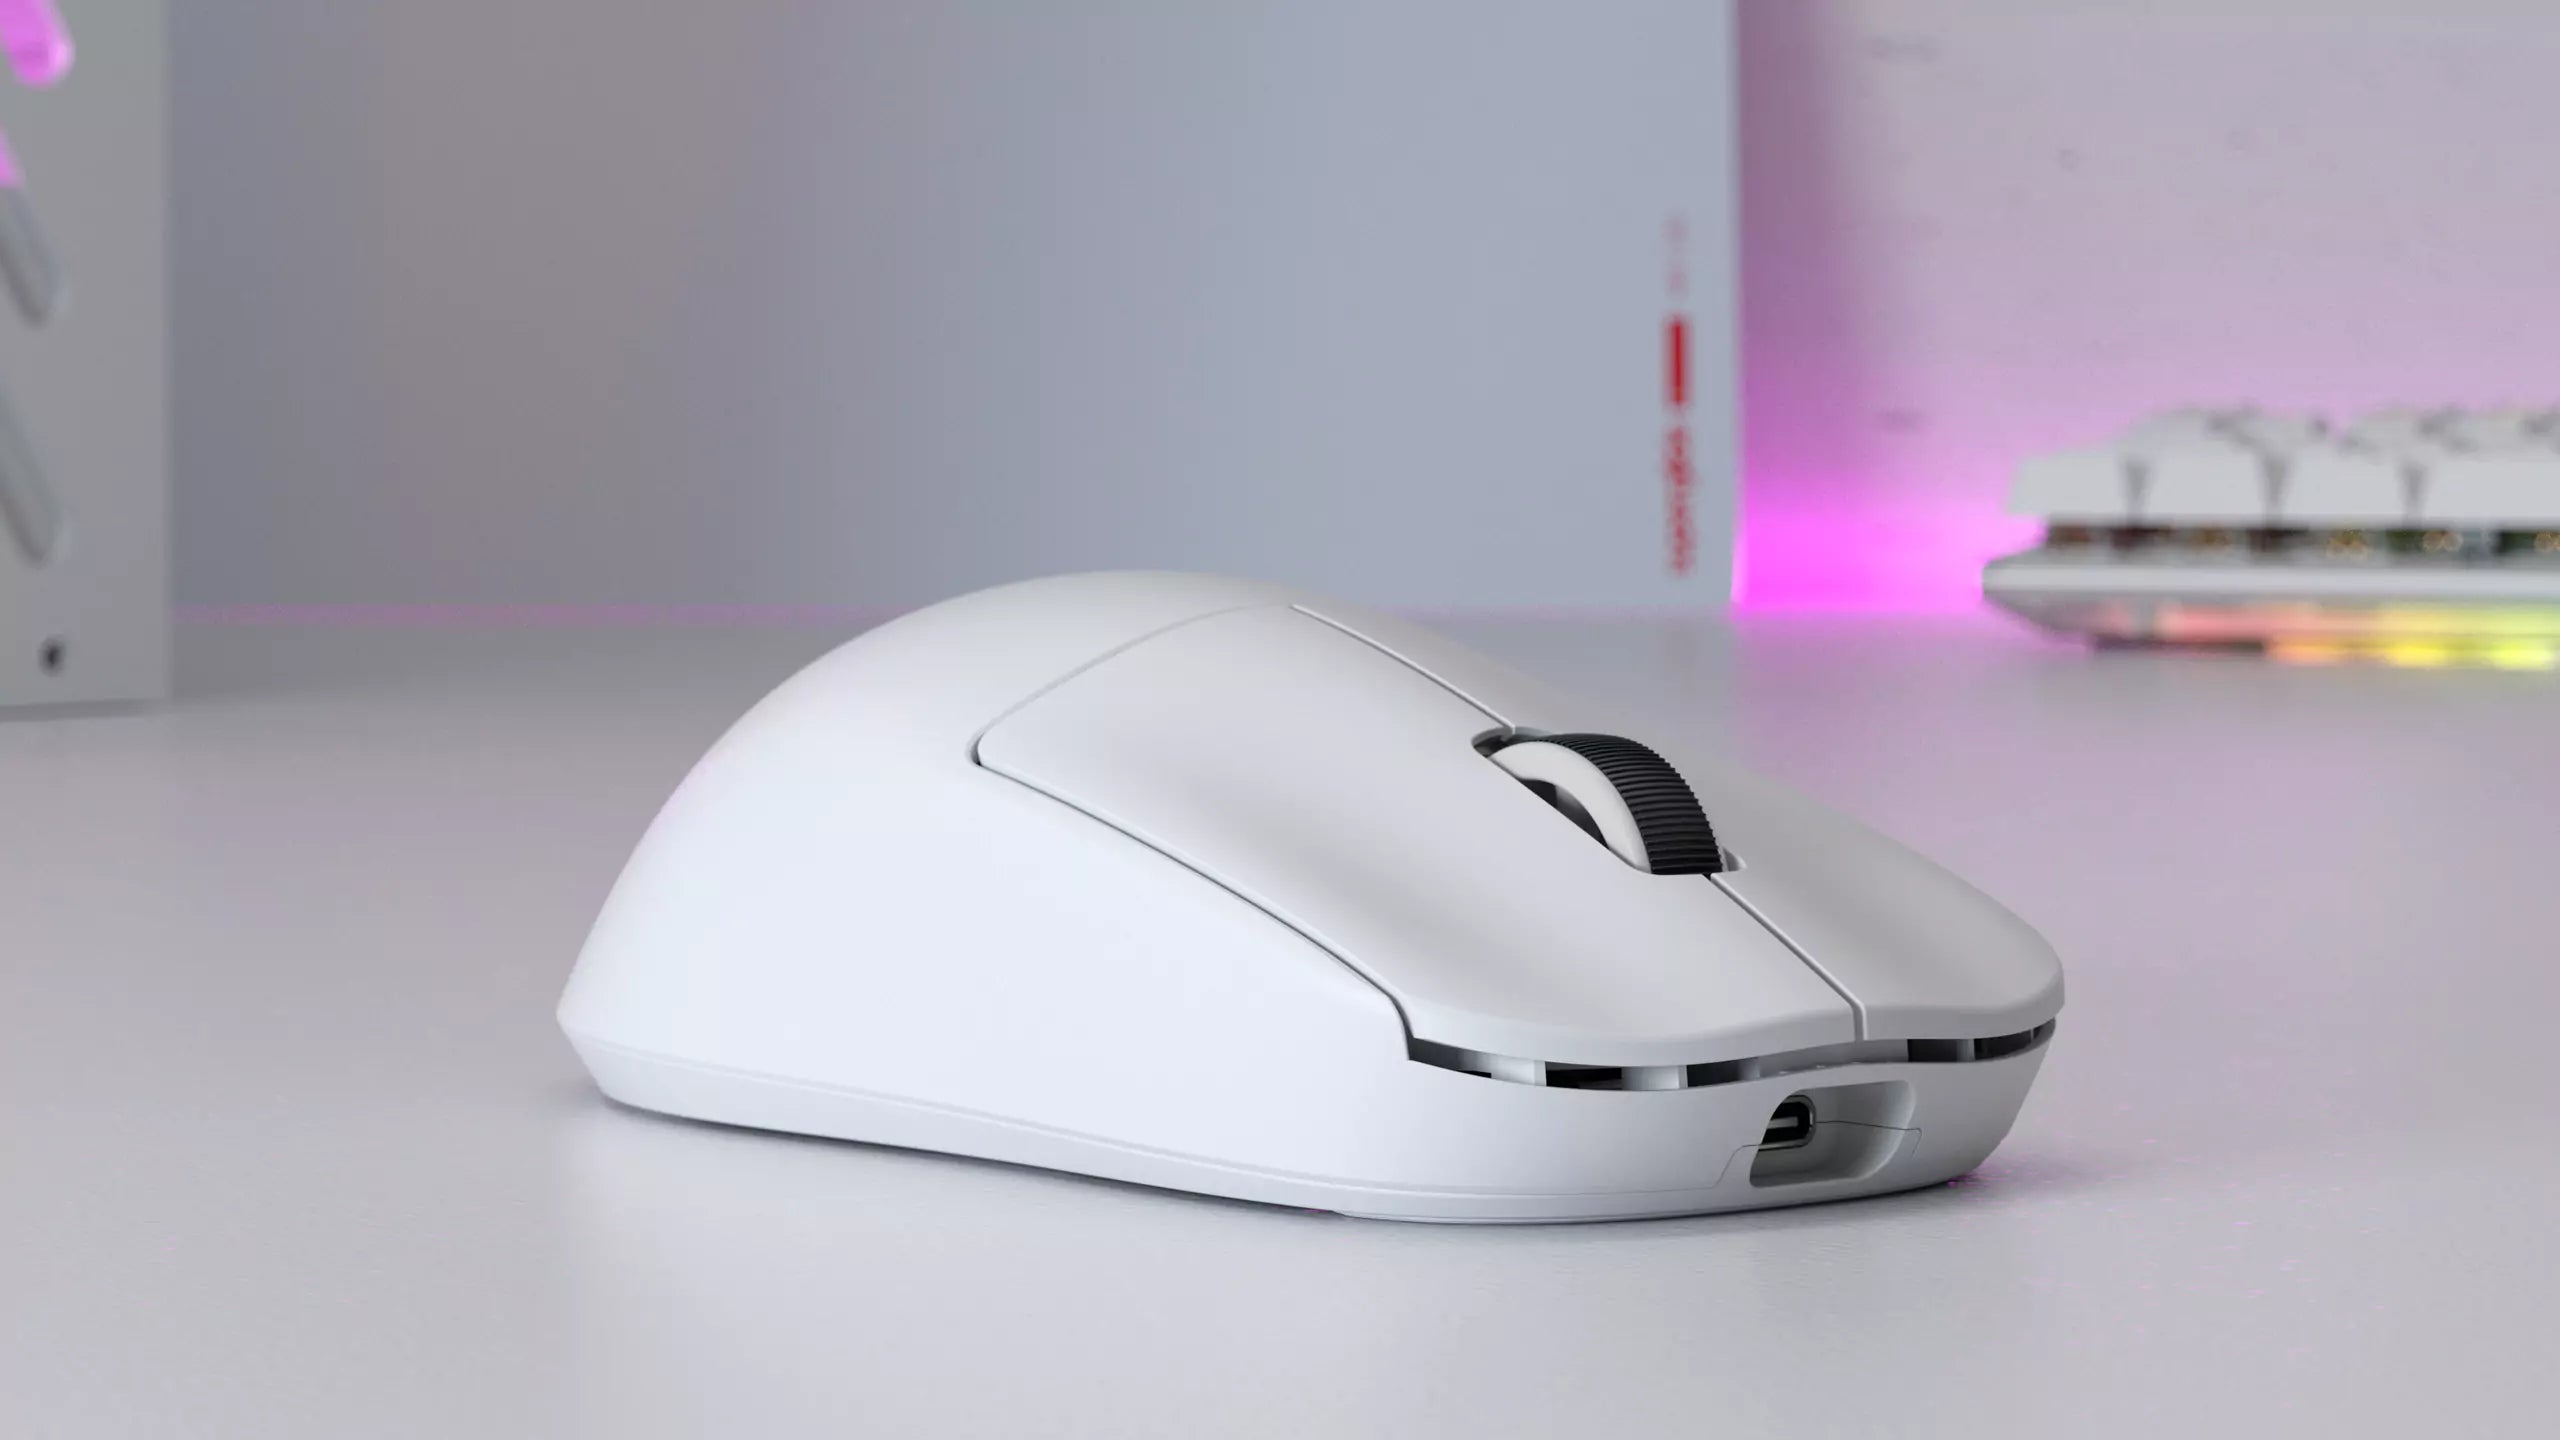 X2V2 Mini Gaming Mouse – Pulsar Gaming Gears Japan